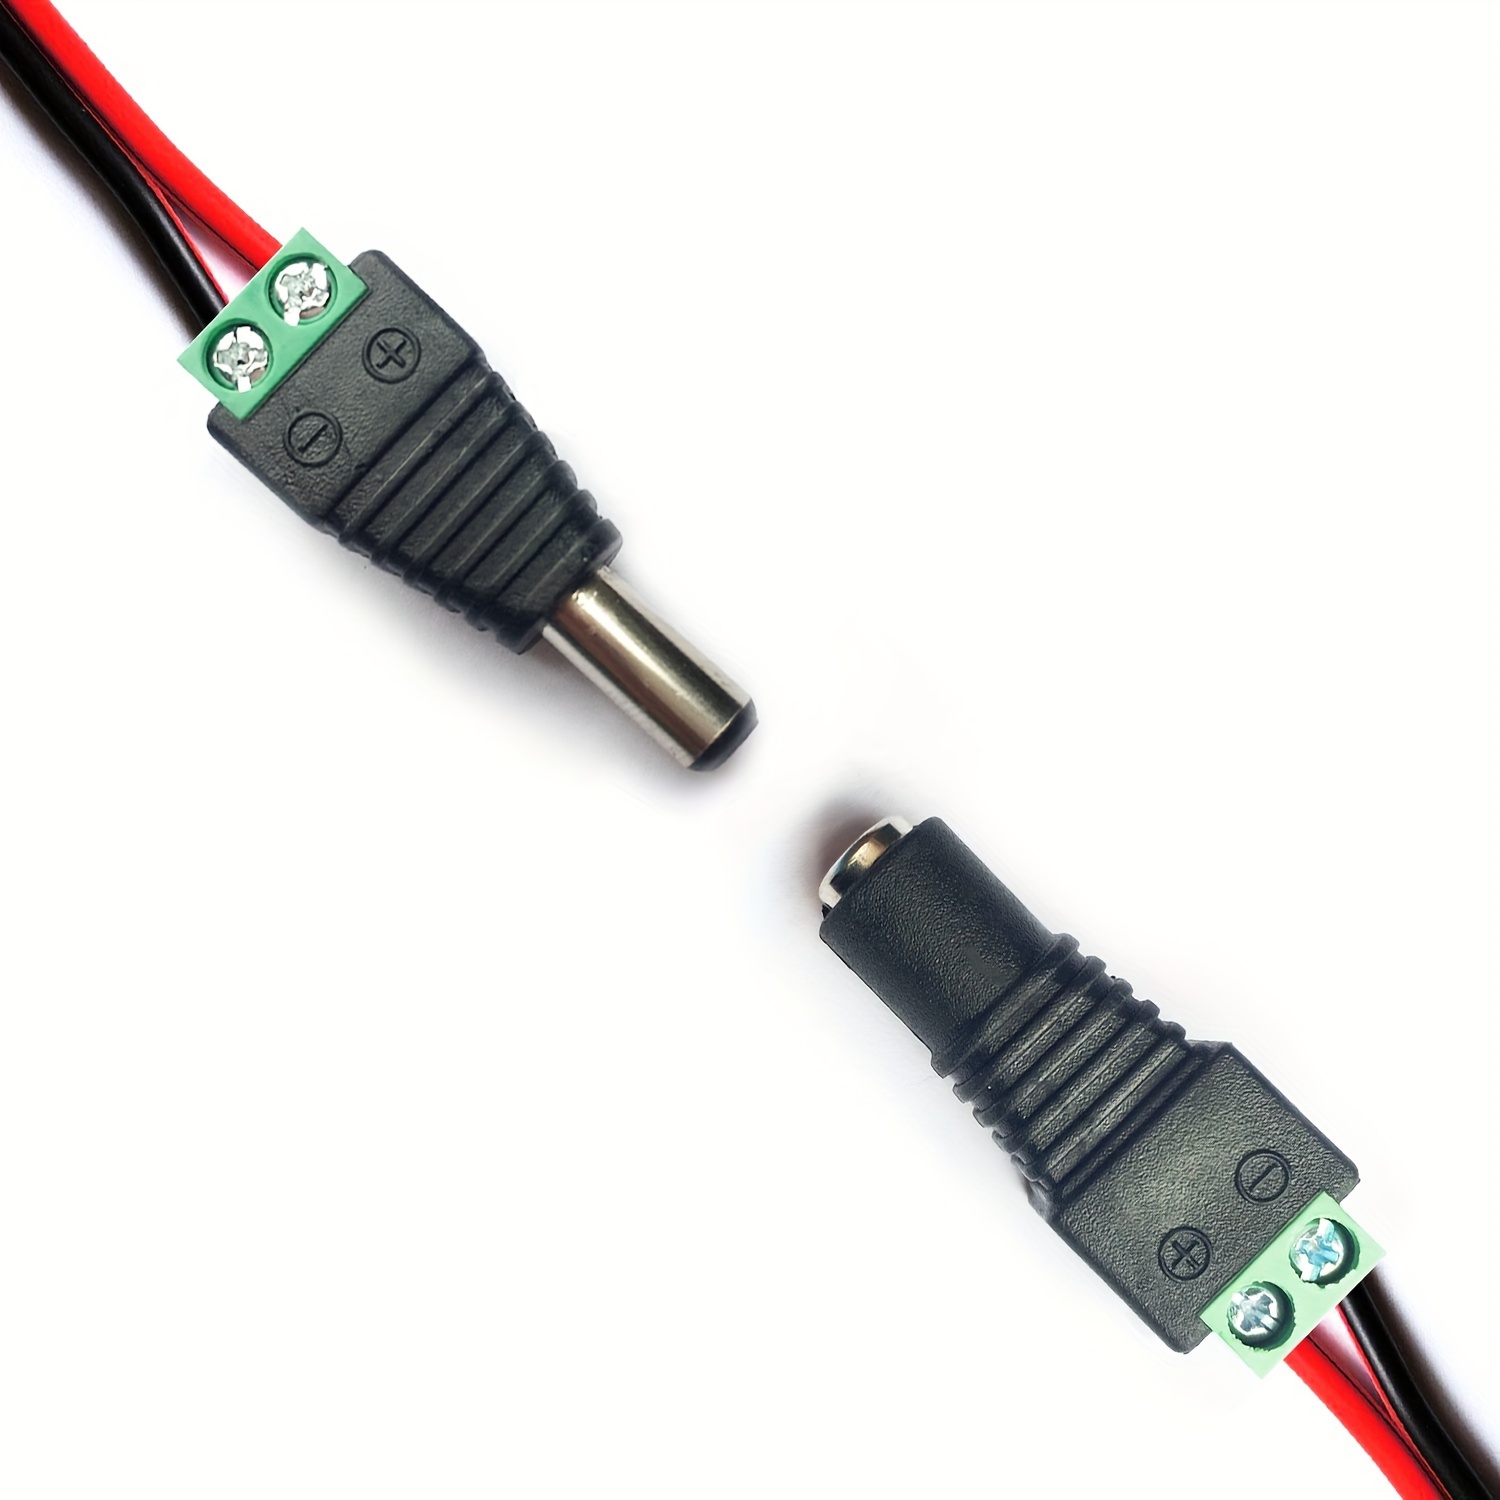 Cable Alargador Transparente Conexión Jack 1,5m para Neón LED